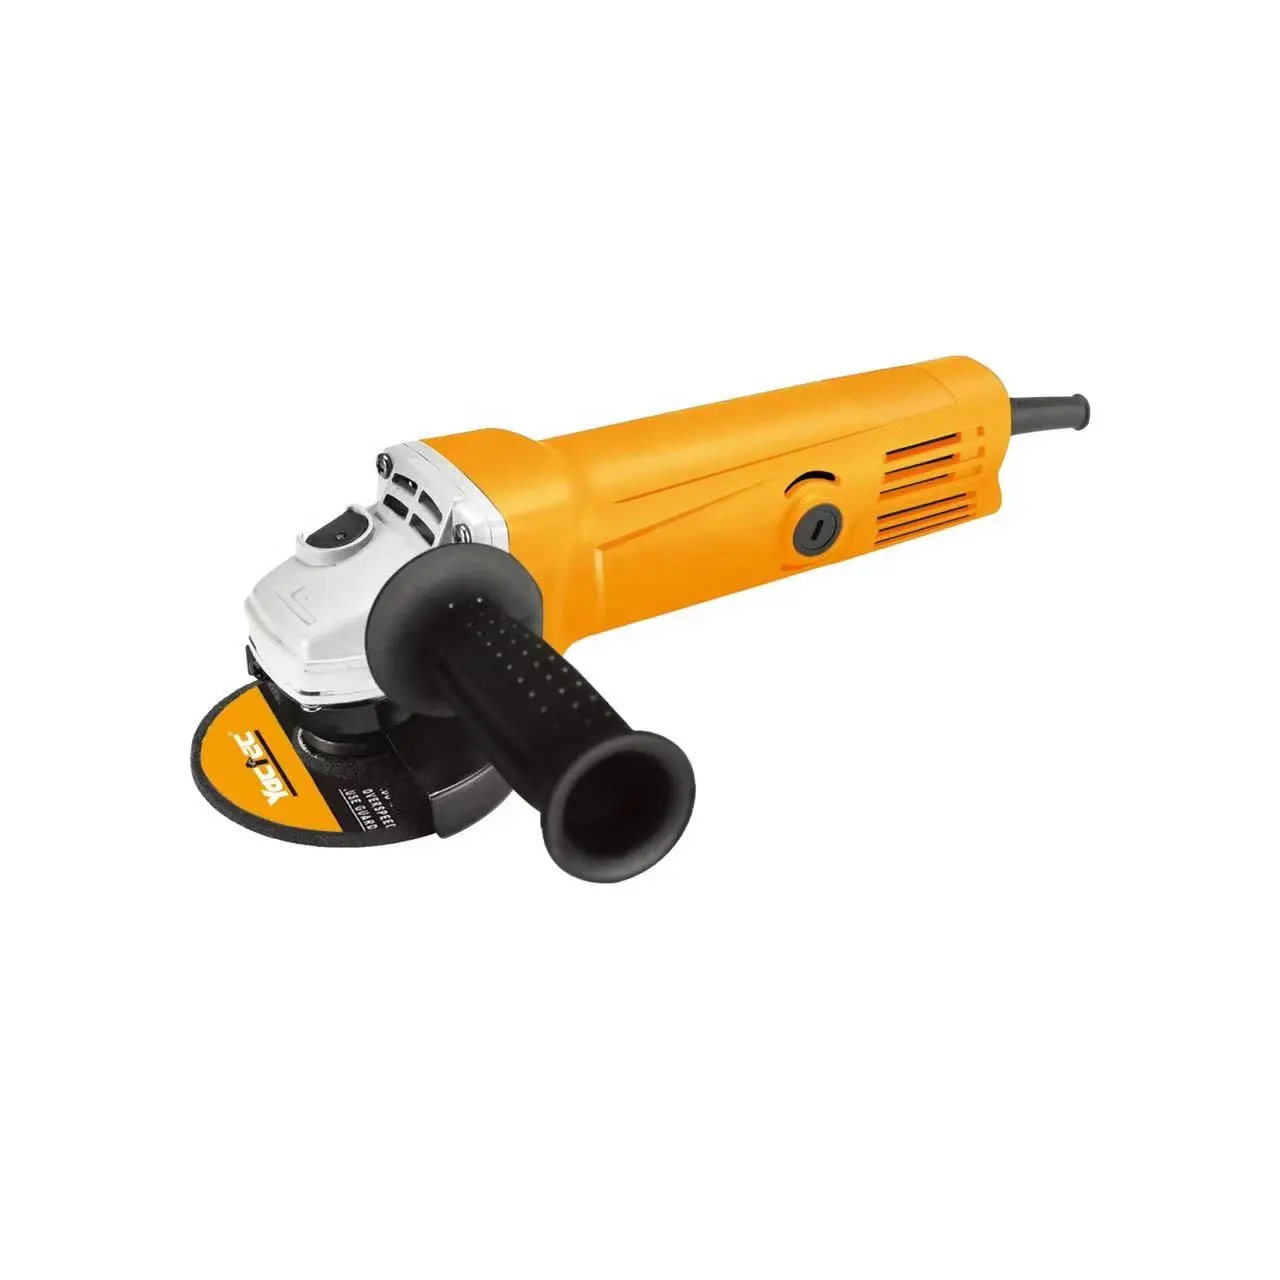 key angle grinder 720W power tools 100mm multifunction 220v-240v angle grinder